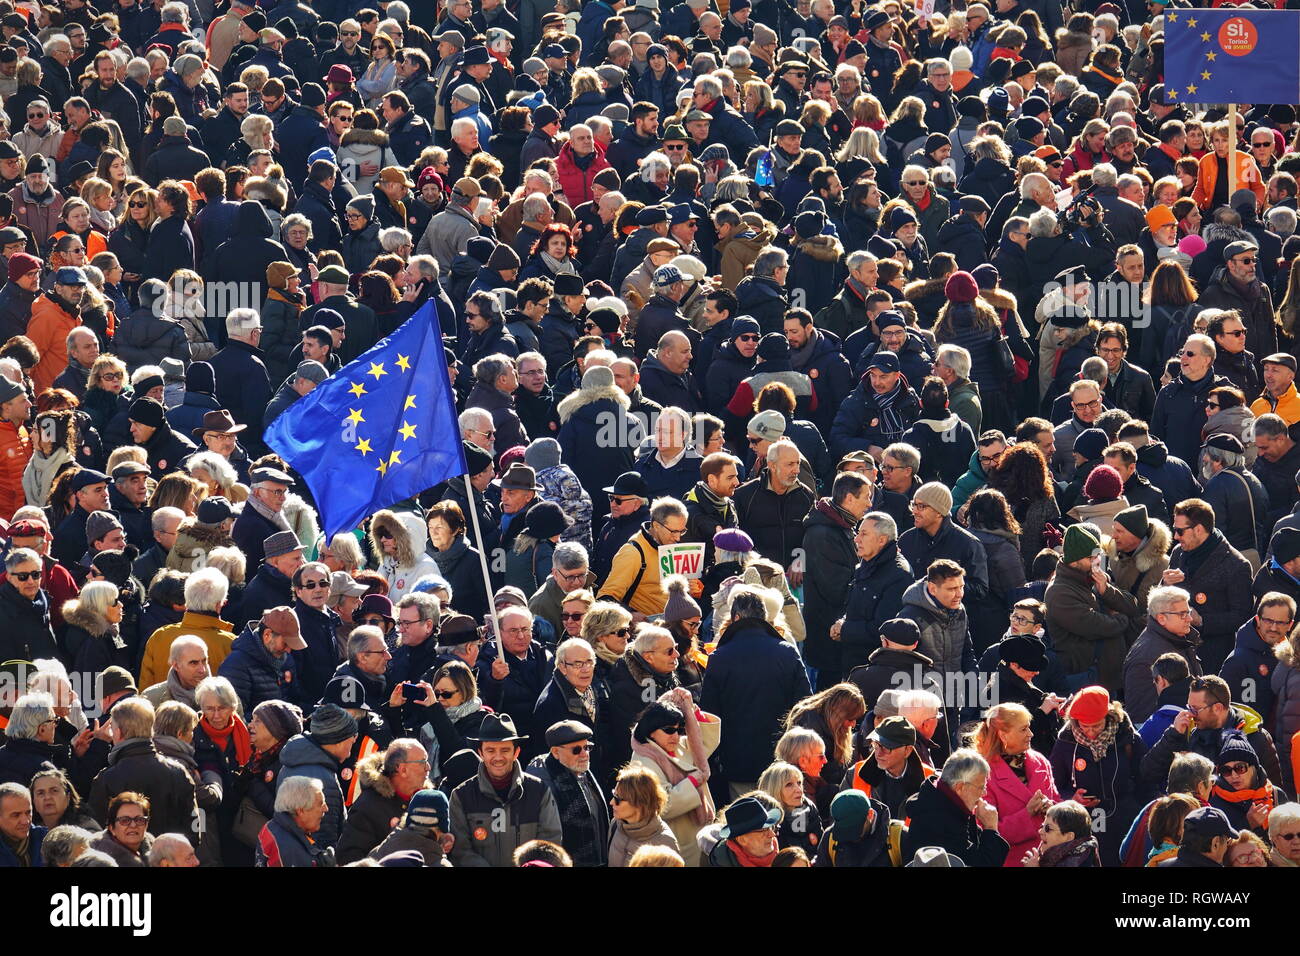 Manifestación en favor de la Unión Europea contra los movimientos nacionalistas. Turín, Italia - Enero 2019 Foto de stock